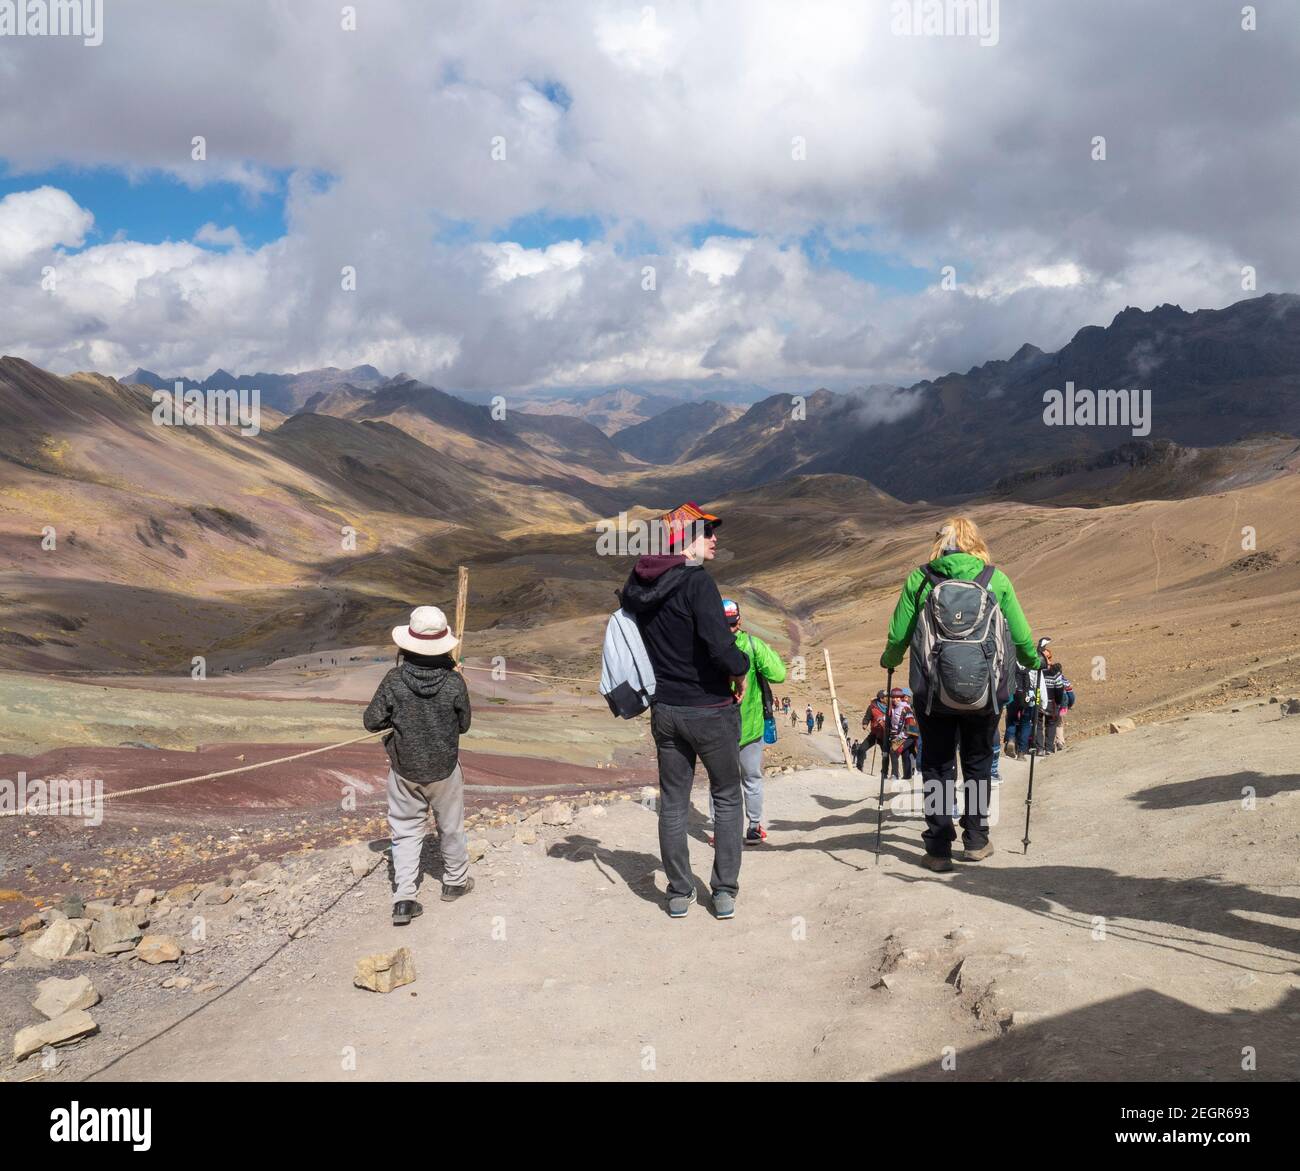 Perù, Vinicunca - 1 ottobre 2019 - turisti multipli a piedi giù dalla montagna su sentiero sterrato, molti toni di terra sulla terra e nuvole gettano ombre Foto Stock